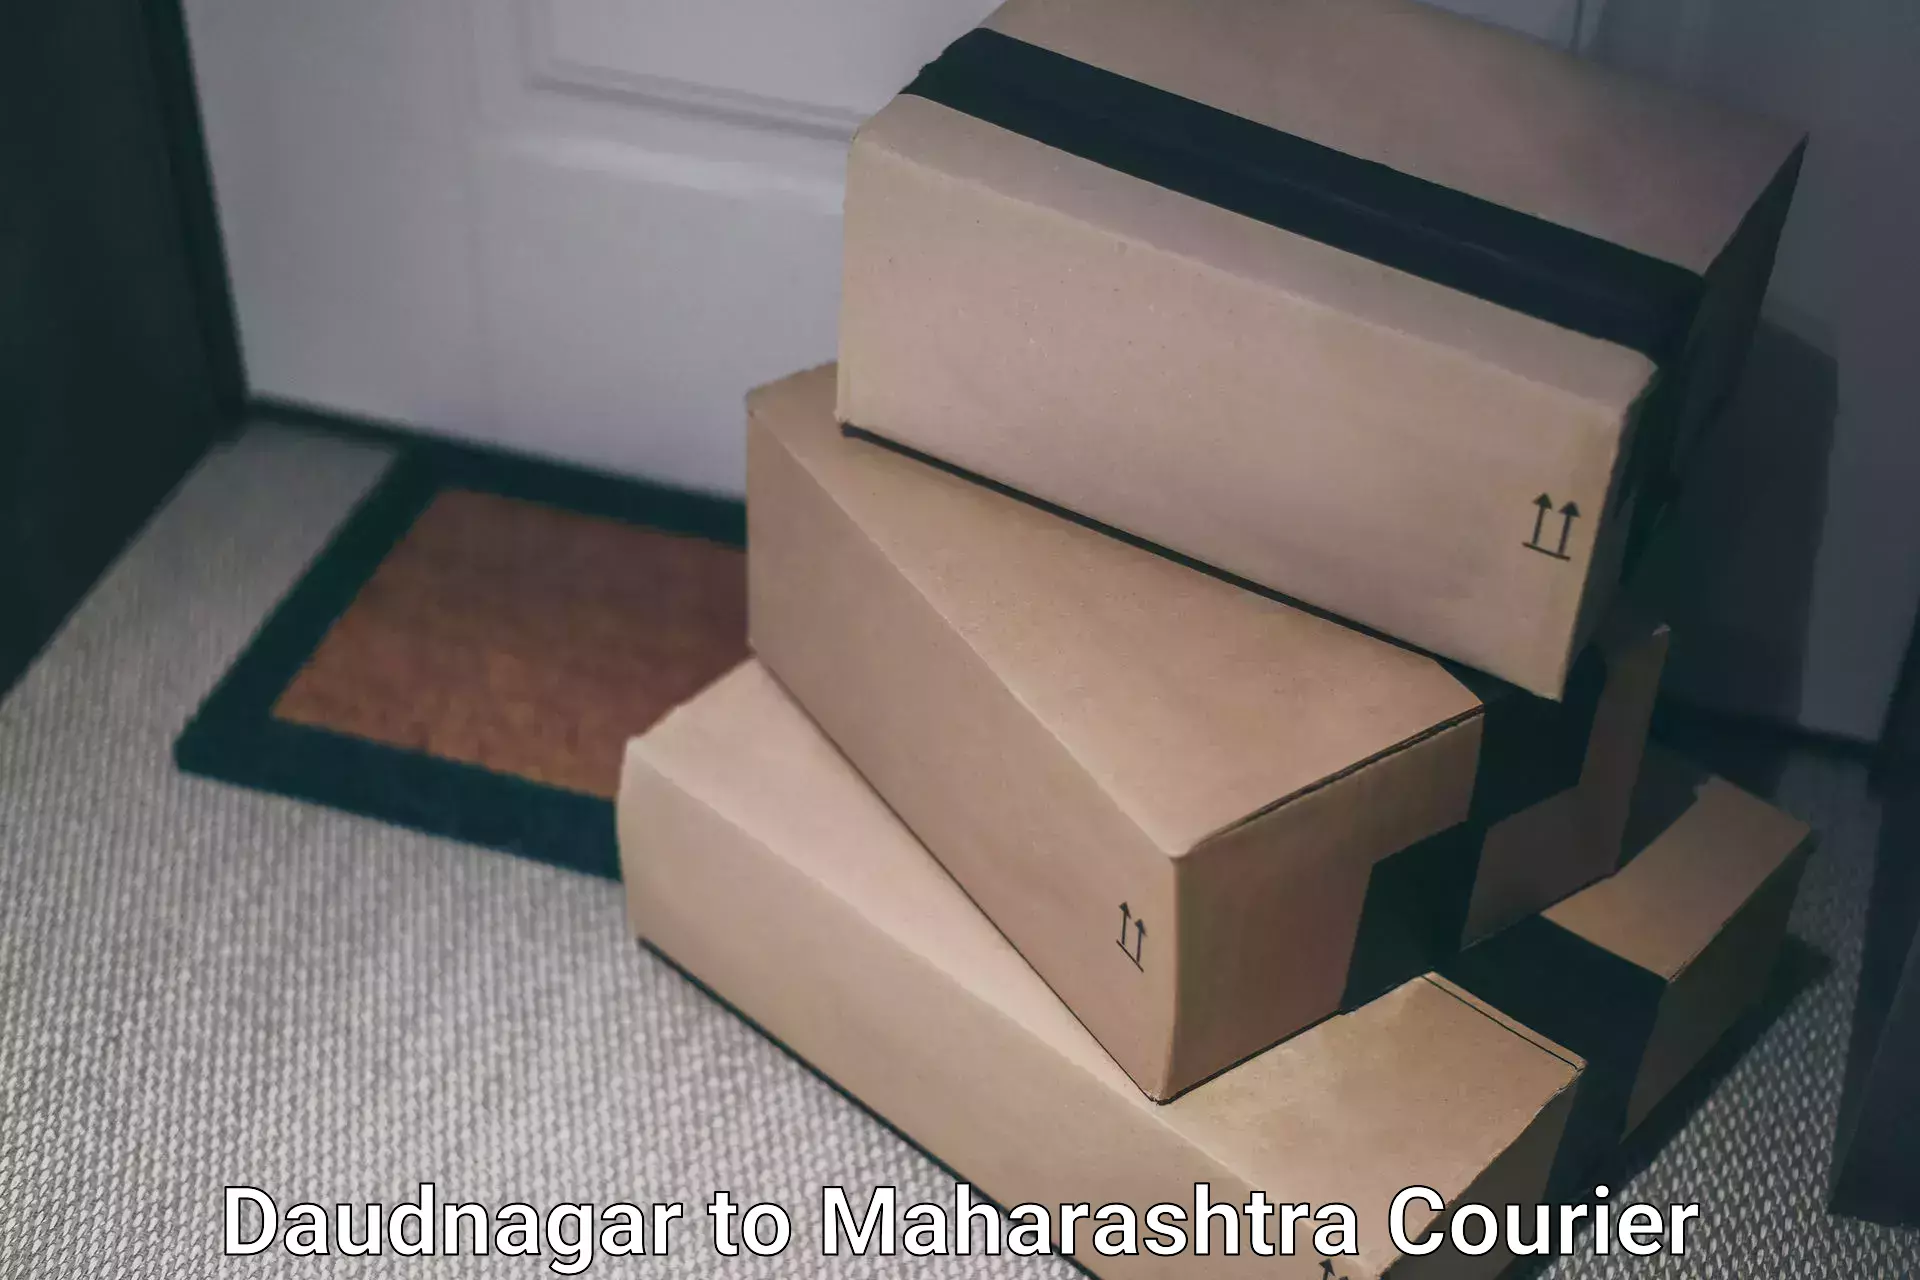 Reliable courier service Daudnagar to Hinganghat